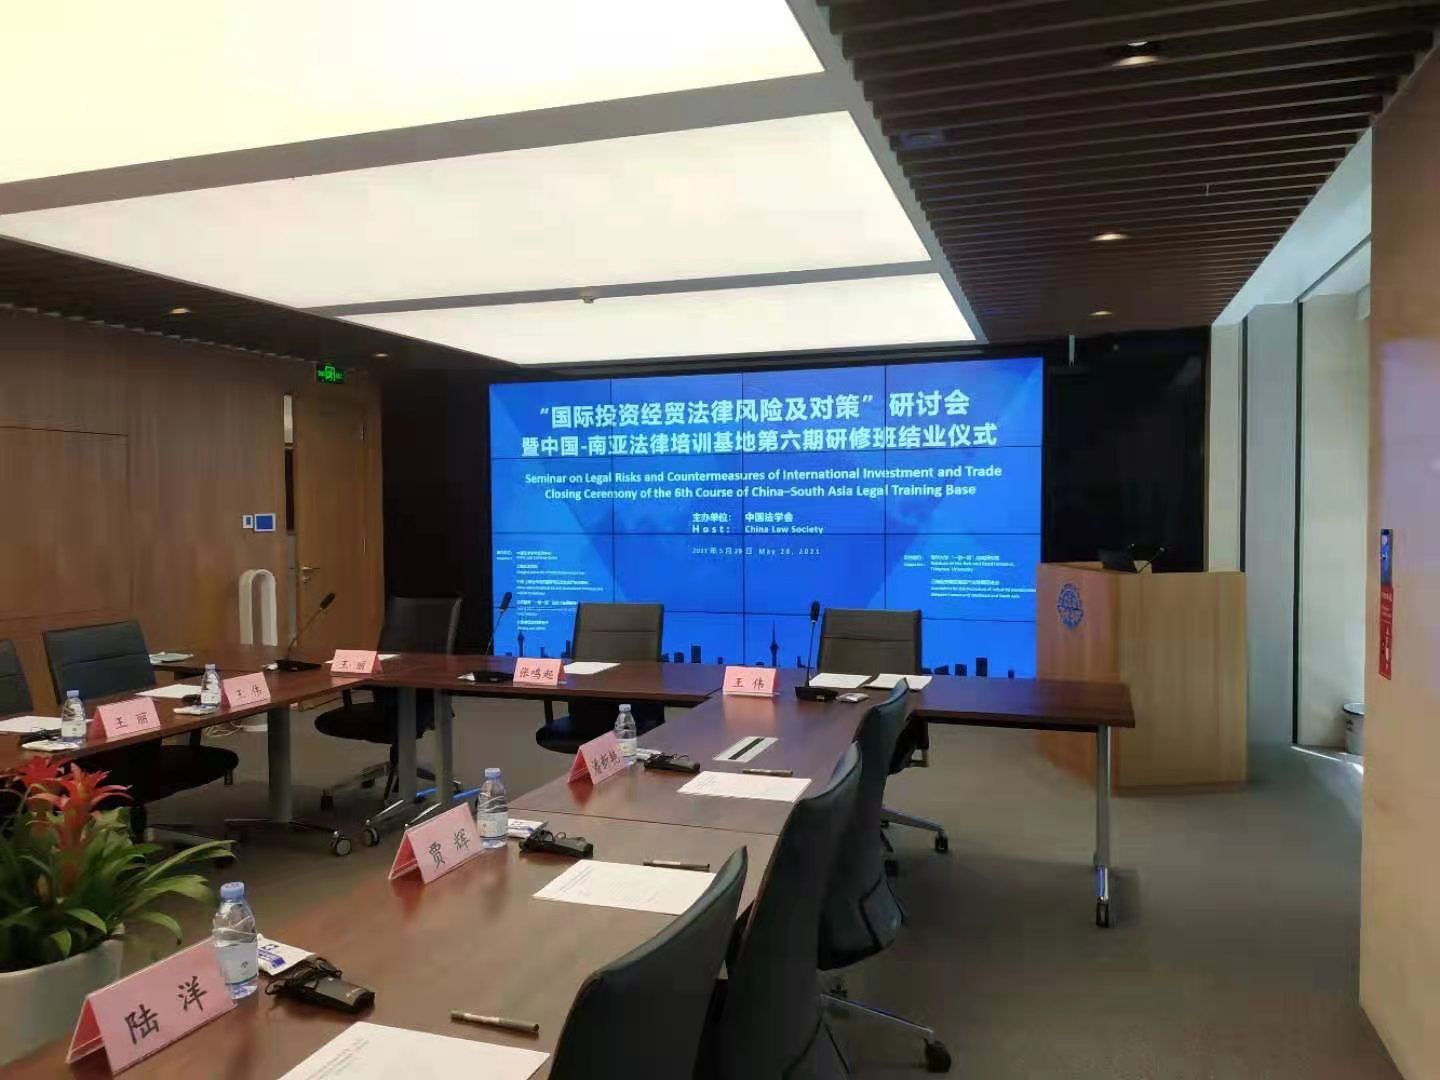 中国-南亚法律培训基地第六期研修班结业仪式